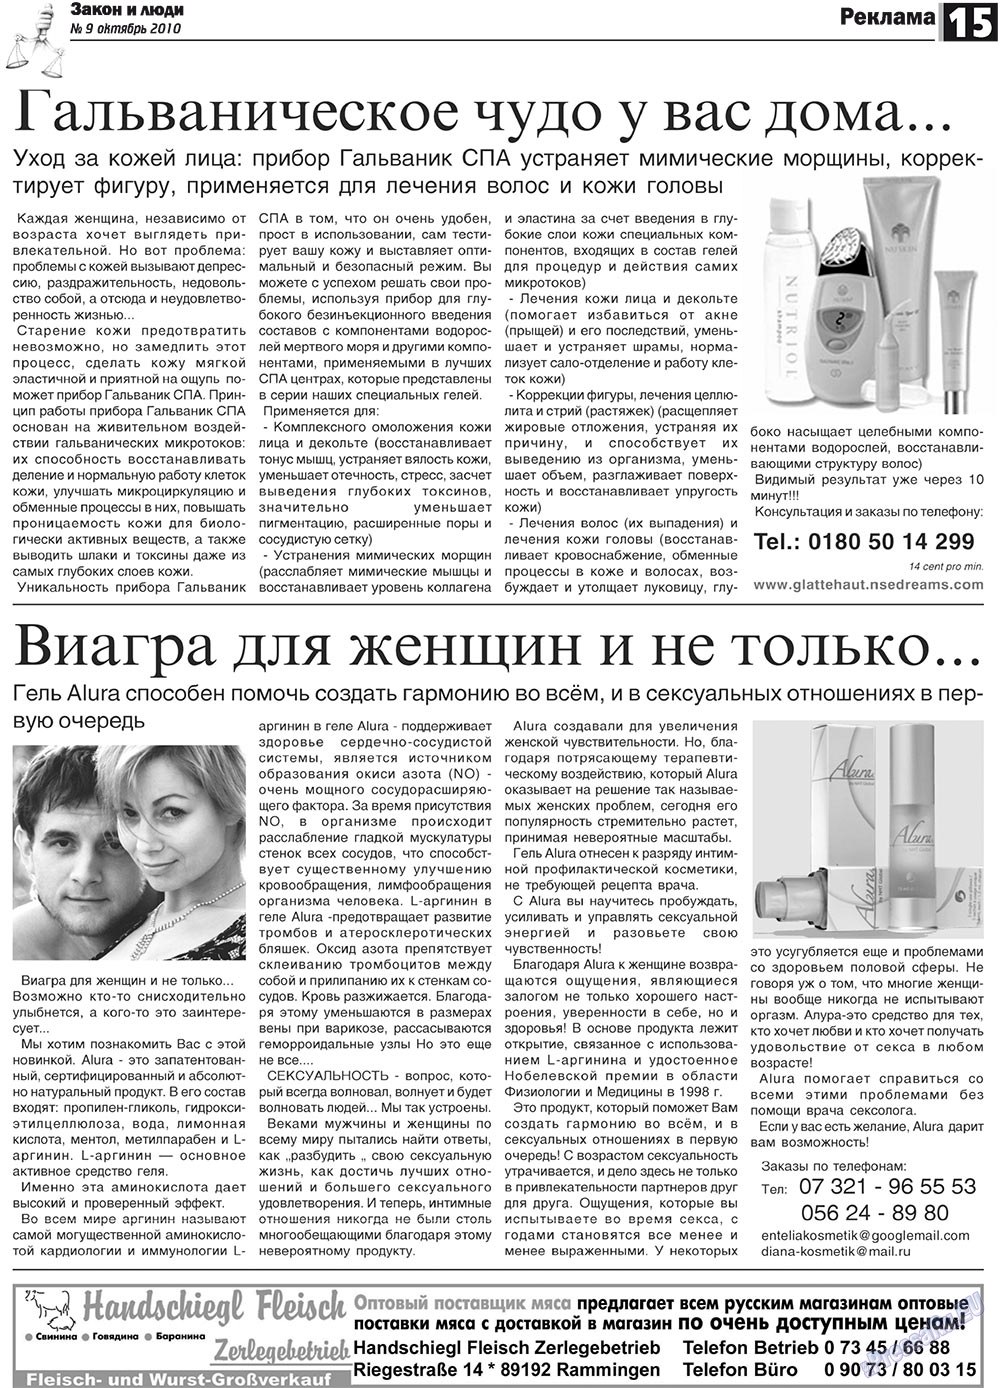 Закон и люди, газета. 2010 №9 стр.15